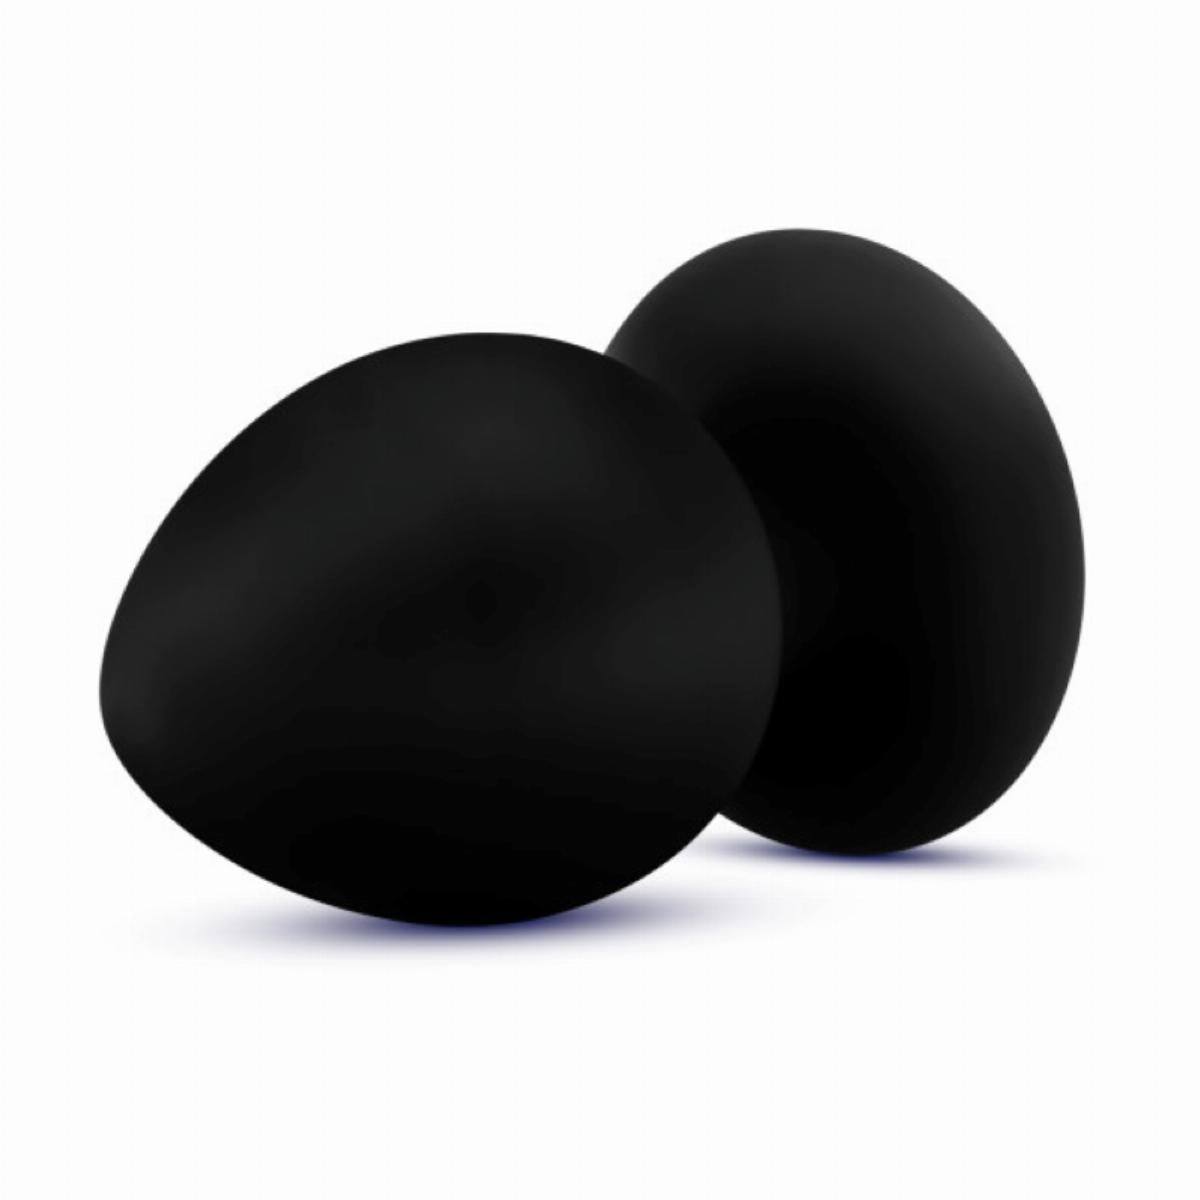 Zwarte stout butt plug met spitse punt, gemaakt van siliconen, breng je makkelijk in. De butt plug heeft het formaat medium en is van Anal Adventures. Deze butt plug is te koop bij Flavourez.